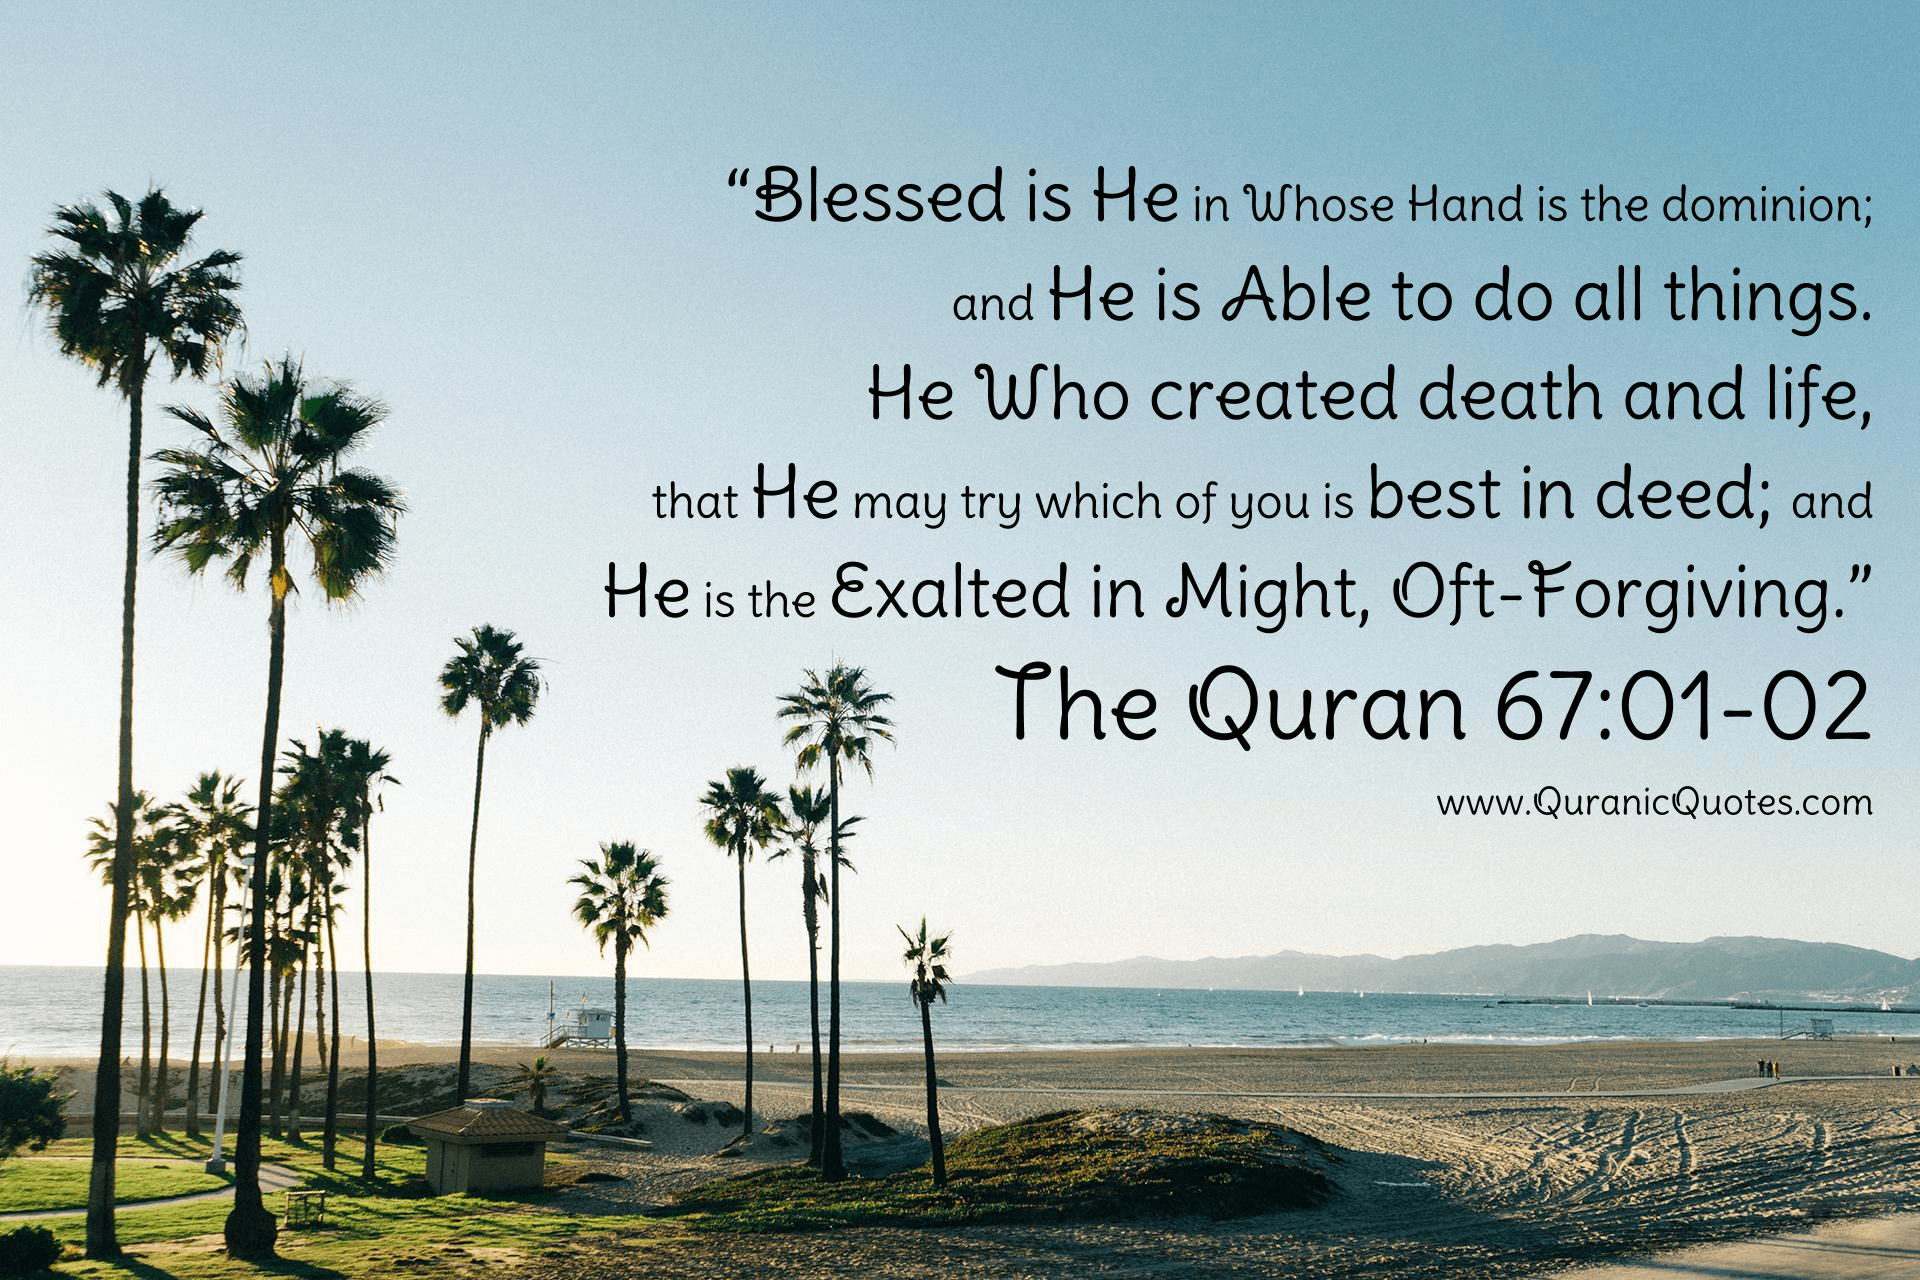 Quranic Quotes #246